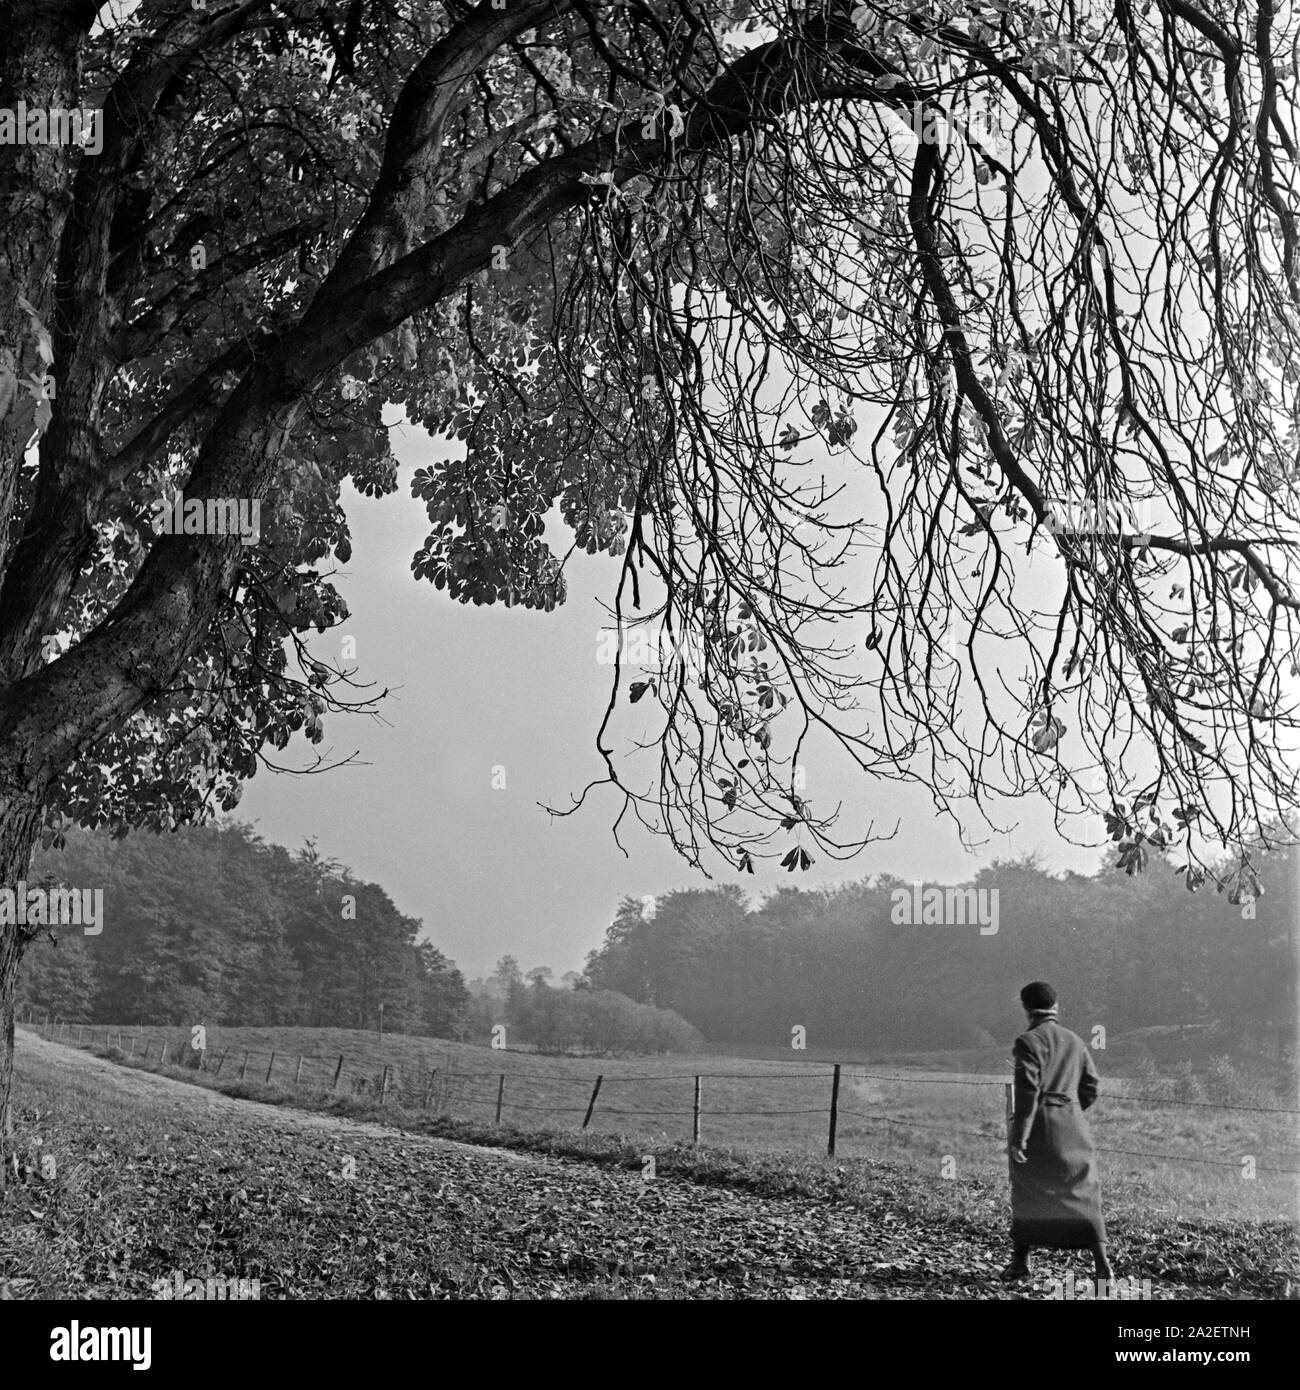 Eine Frau kommt bei einem Herbstspaziergang an knorrigen alten Bäumen vorbei, Deutschland 1930er Jahre. A woman passing great old trees at an autumn stroll, Germany 1930s. Stock Photo